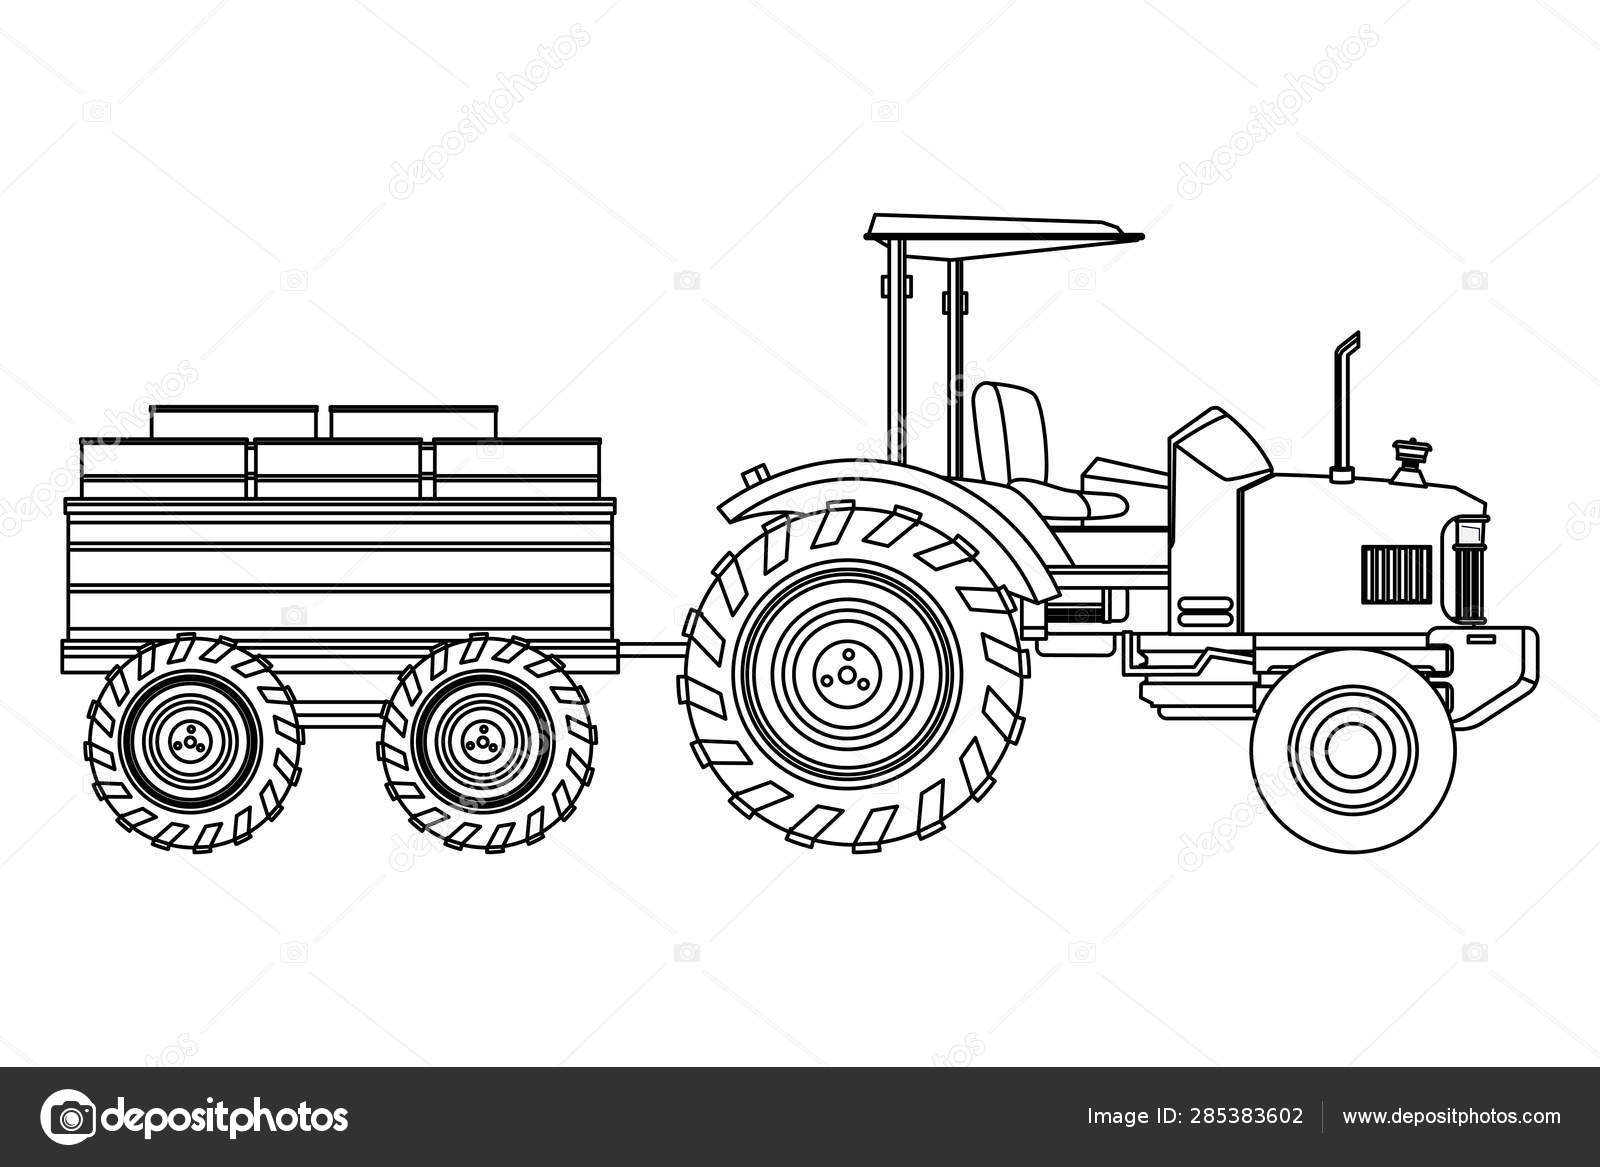 Desenho de um trator agrícola com um reboque